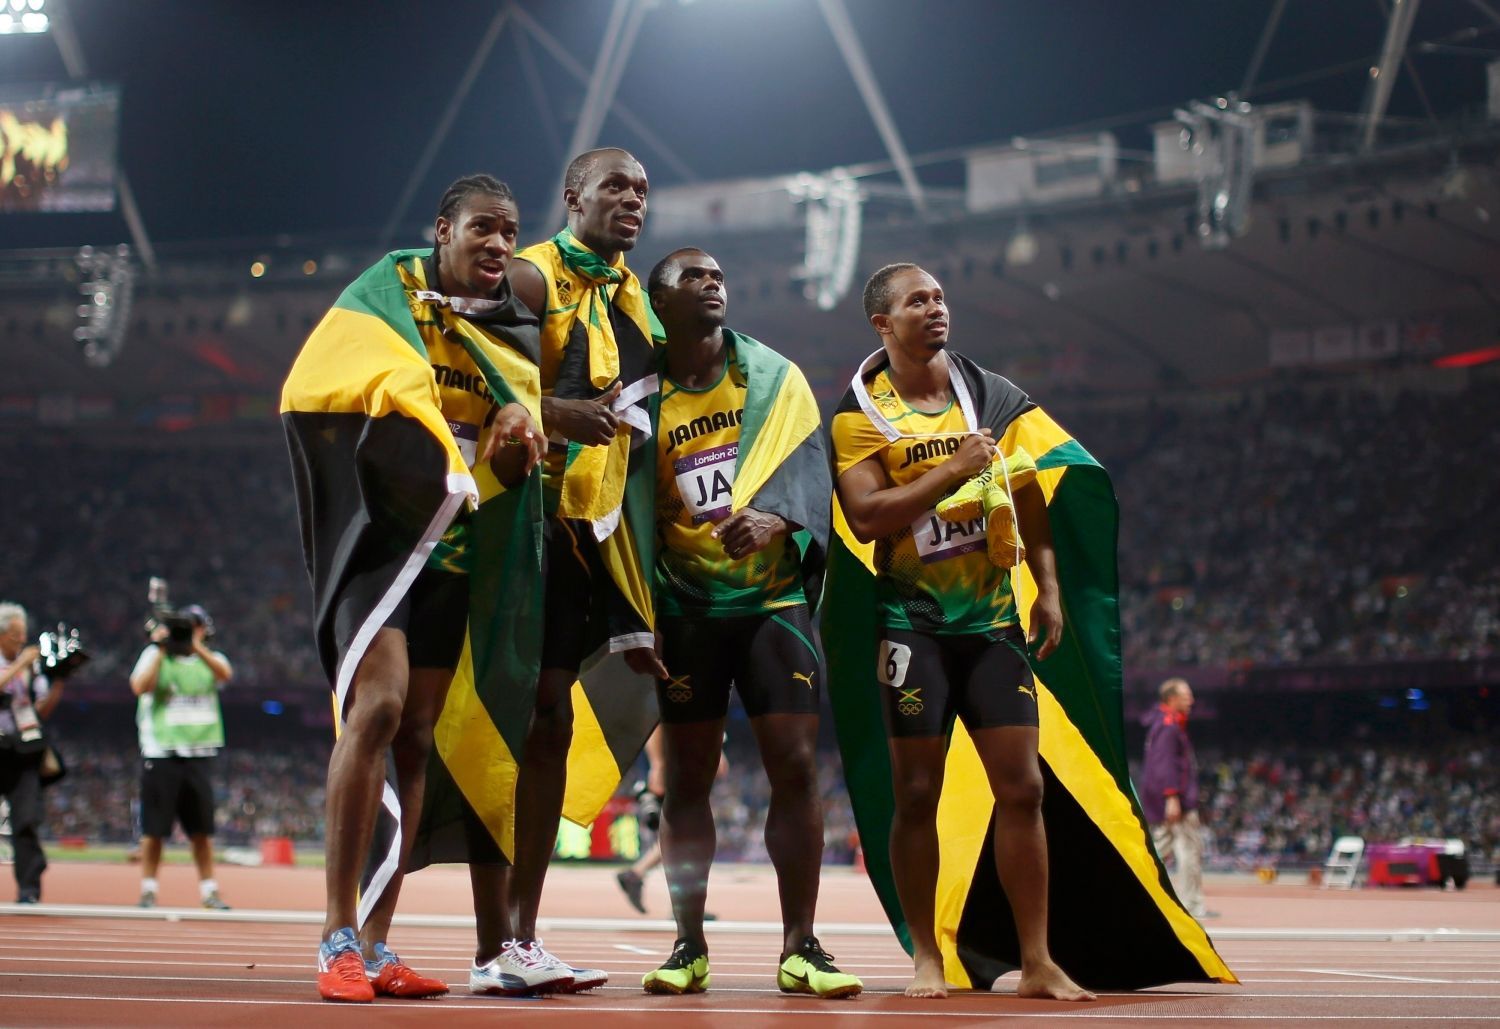 Jamajský štafetový tým sprinterů na 4x100 metrů slaví zlato a světový rekord na OH 2012 v Londýně.